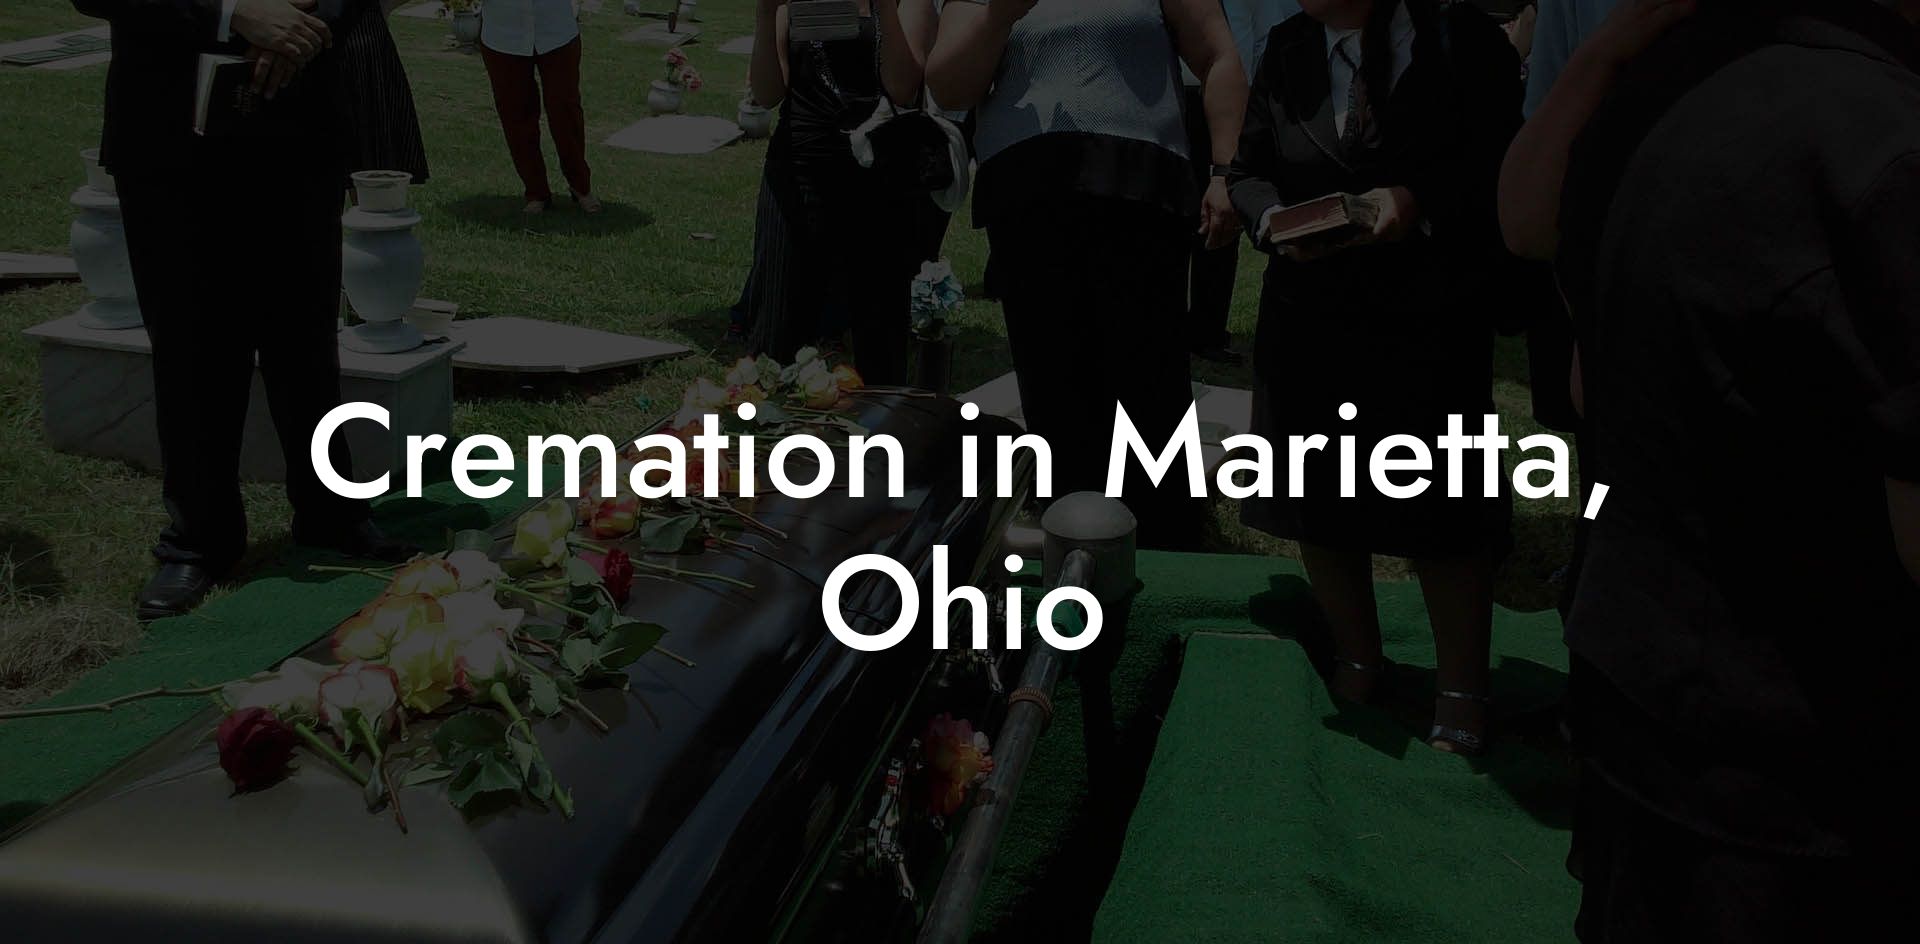 Cremation in Marietta, Ohio